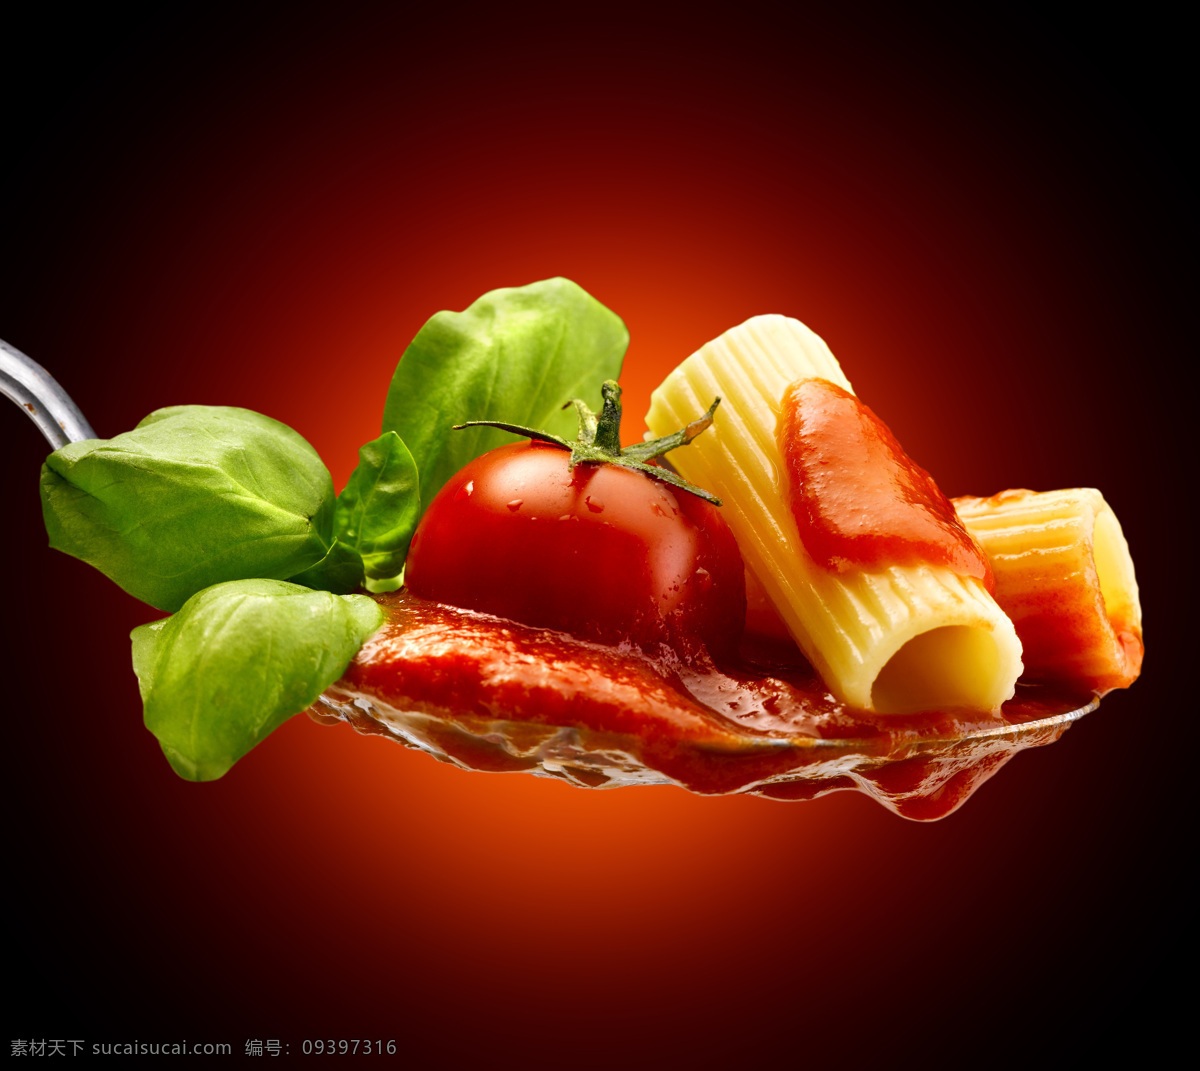 番茄酱包装 番茄 三维插图 厨师 浸 味 流 果汁 涌出 食谱 调味汁 调味品 餐饮美食